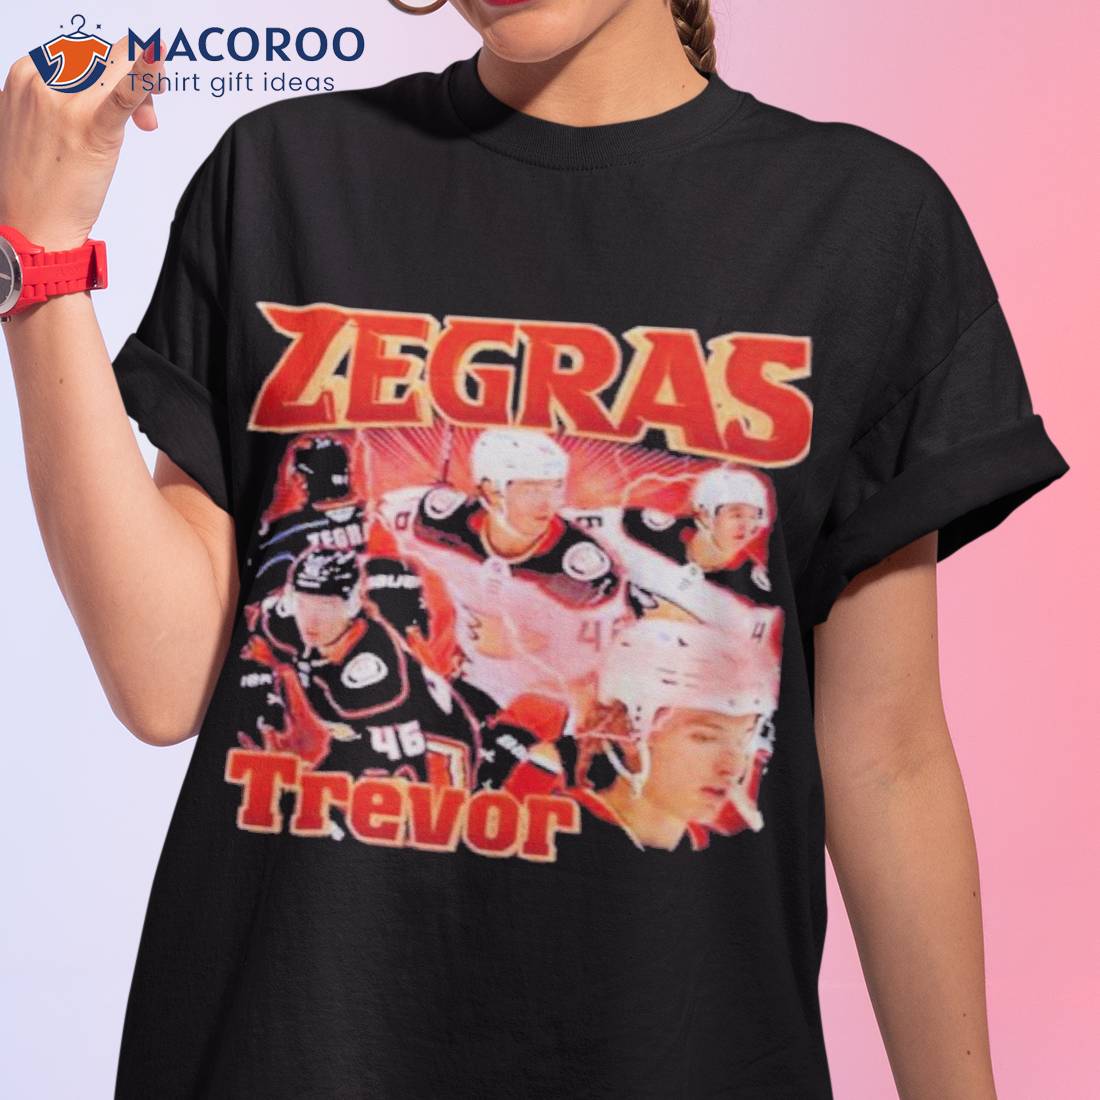 Zegras Trevor 46 Shirt - Trend Tee Shirts Store